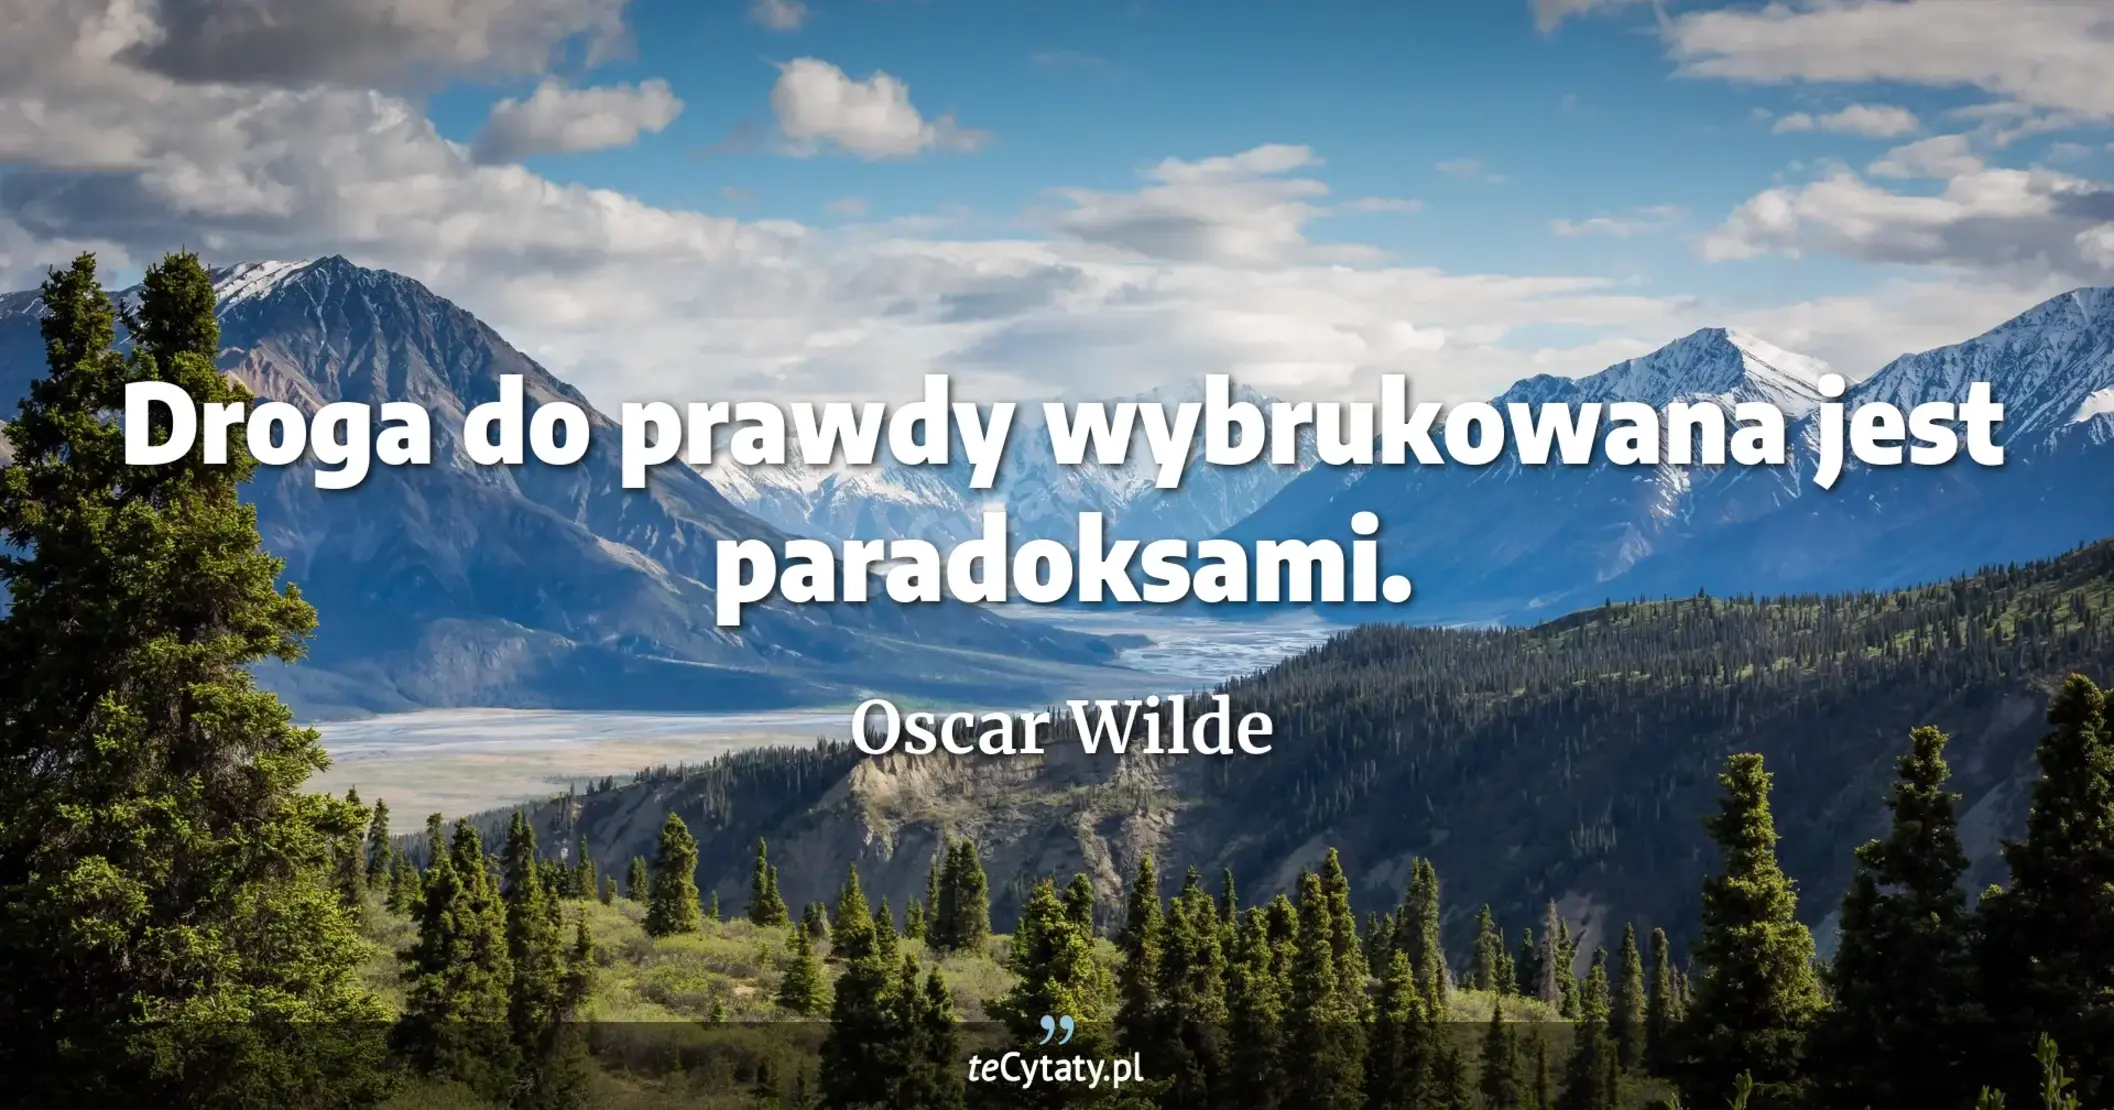 Droga do prawdy wybrukowana jest paradoksami. - Oscar Wilde